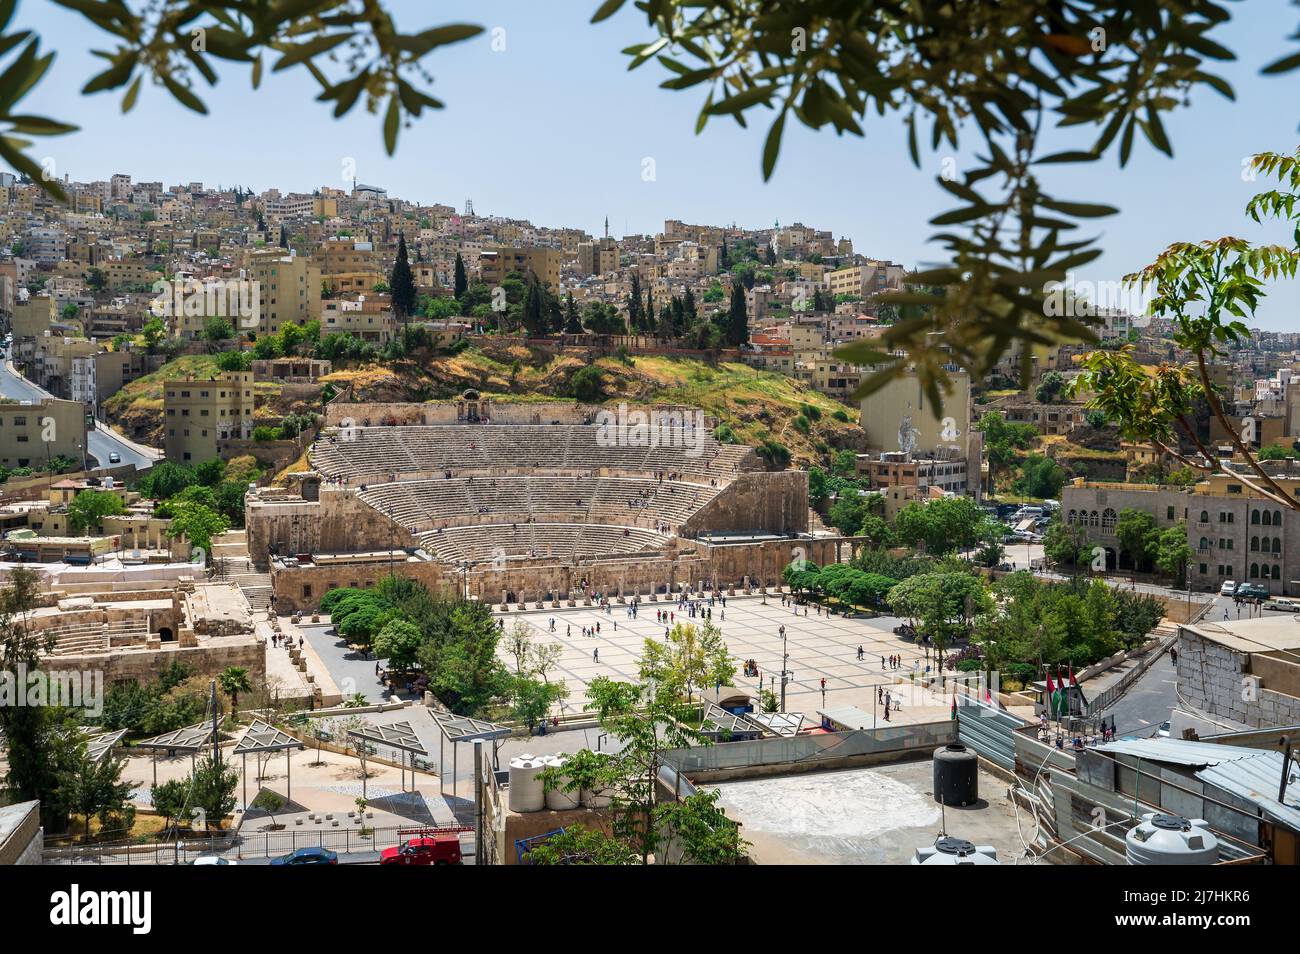 Die Skyline von Amman in der Innenstadt Jordaniens wird von einem alten römischen Theatergebäude zwischen Wohnhäusern im alten Stadtzentrum dominiert Stockfoto